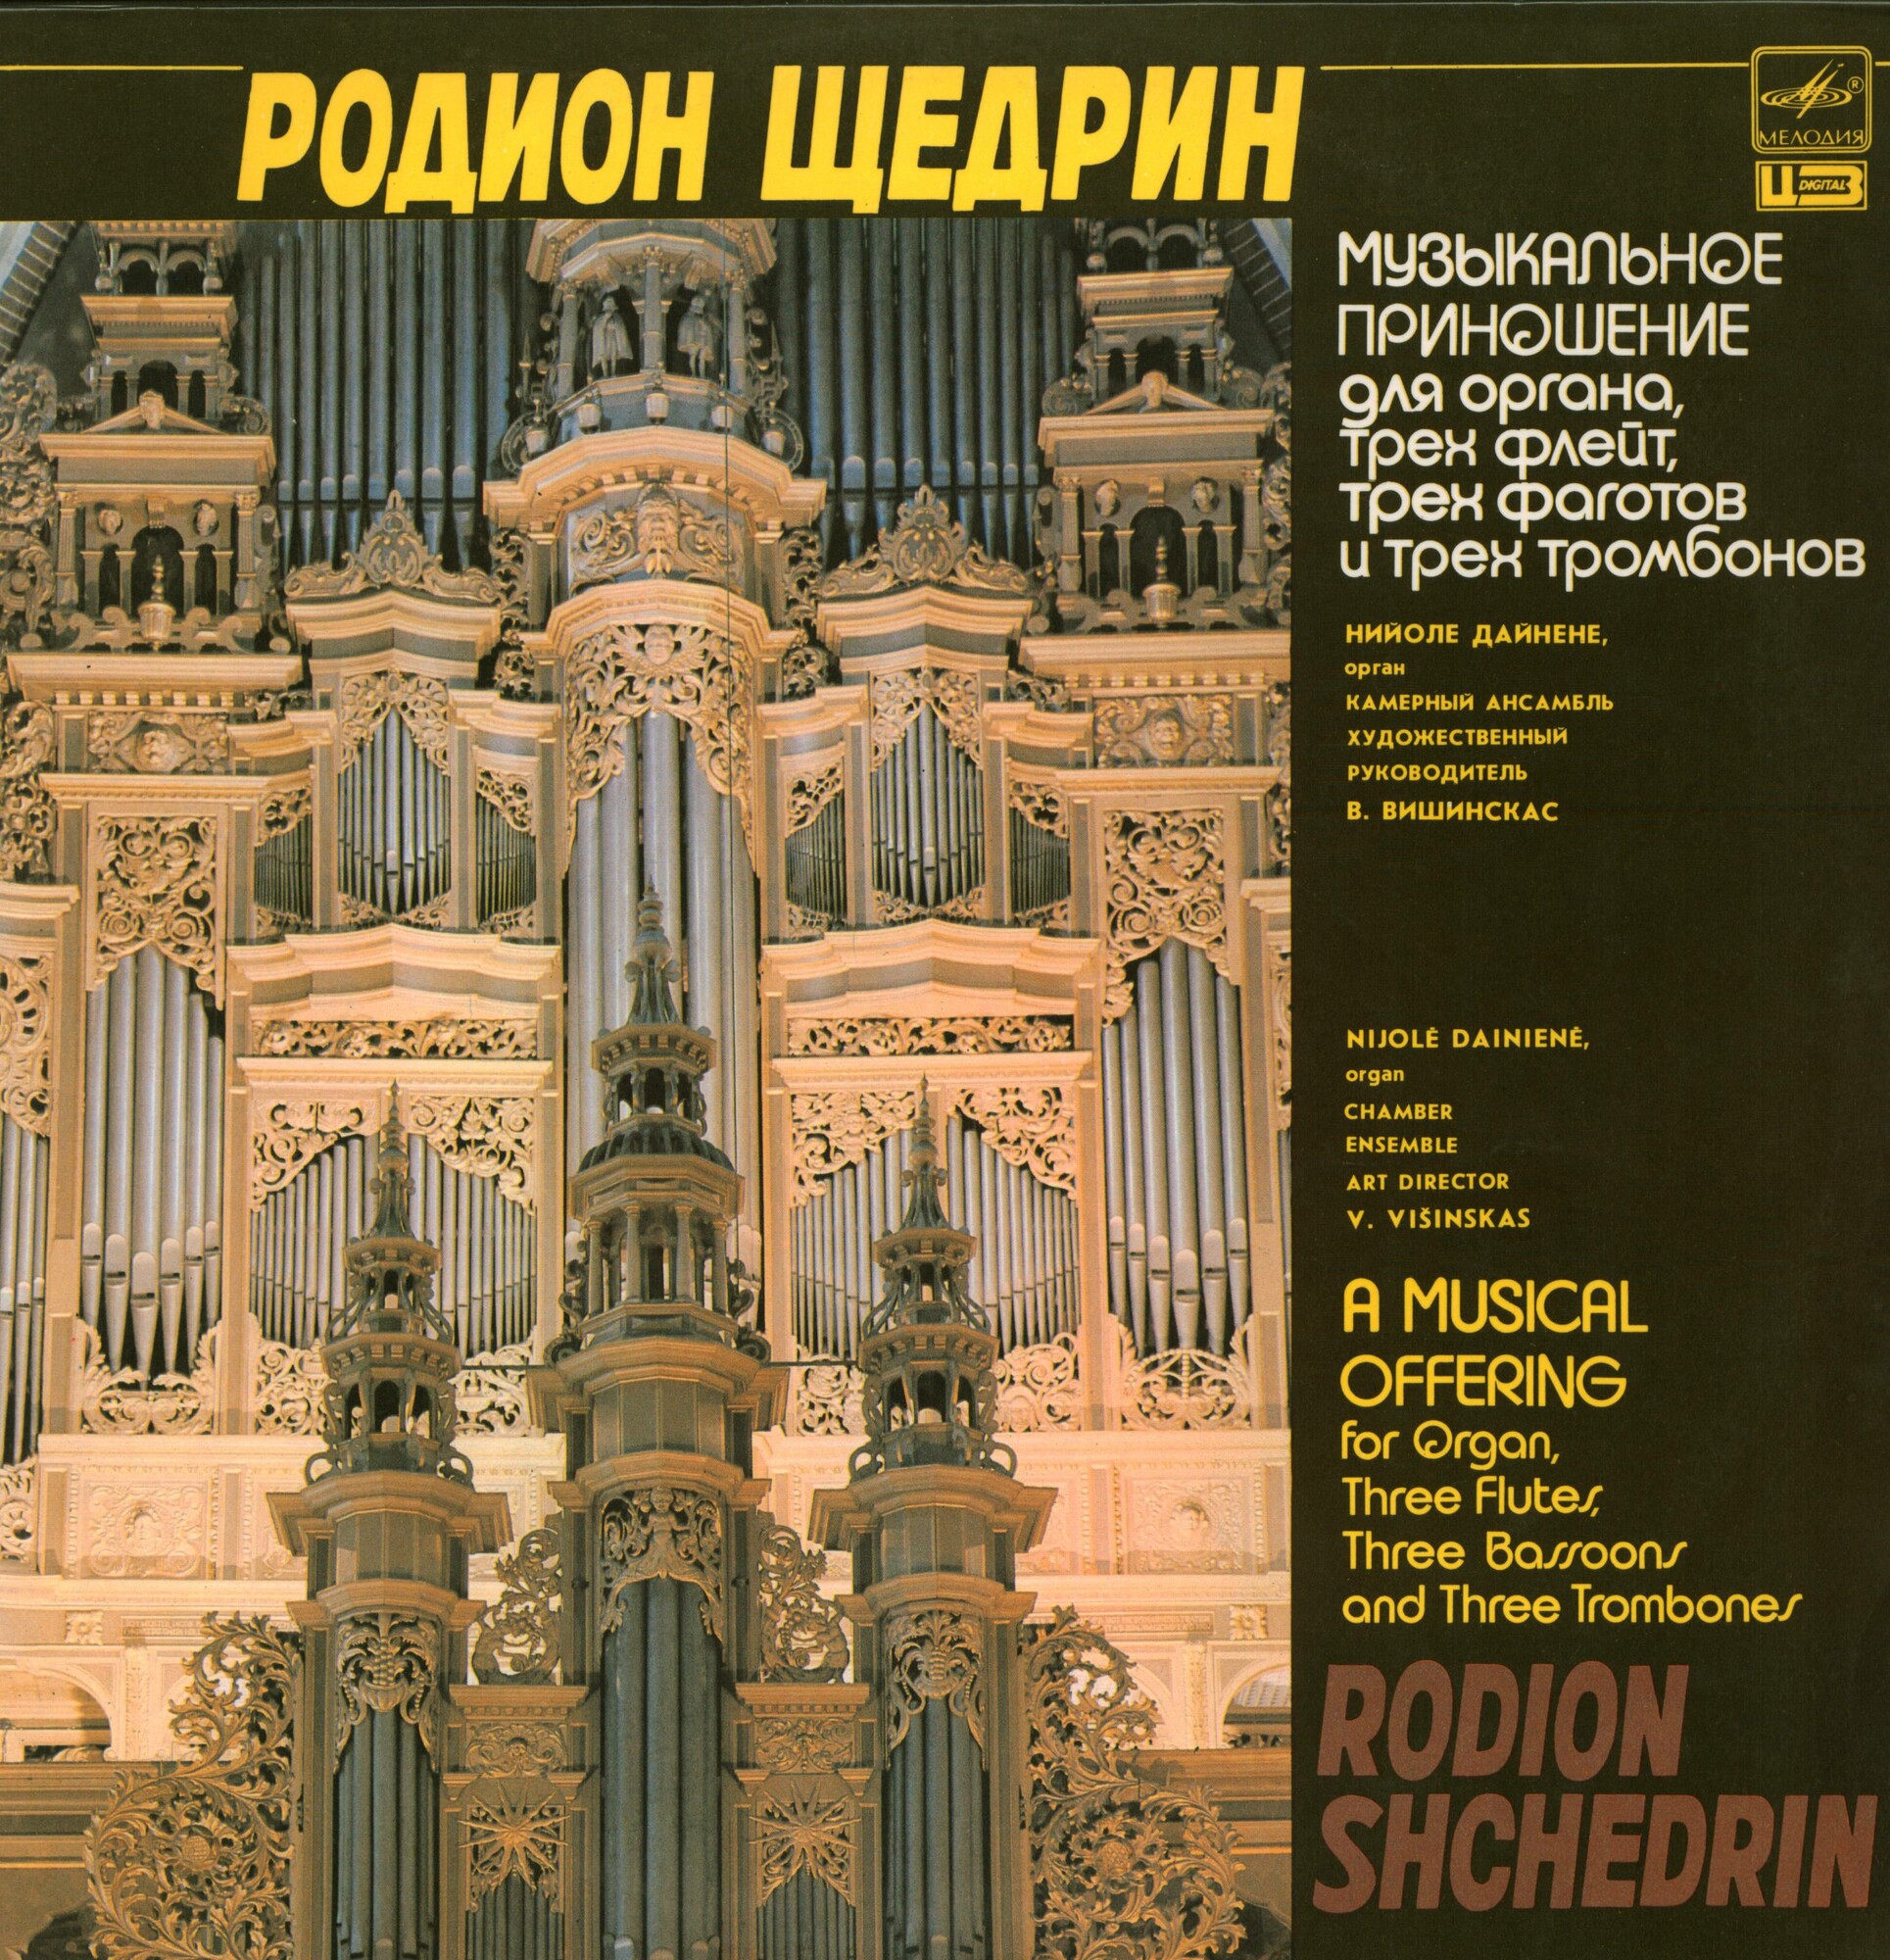 Р. ЩЕДРИН (1932): «Музыкальное приношение» для органа, трех флейт, трех фаготов и трех тромбонов.